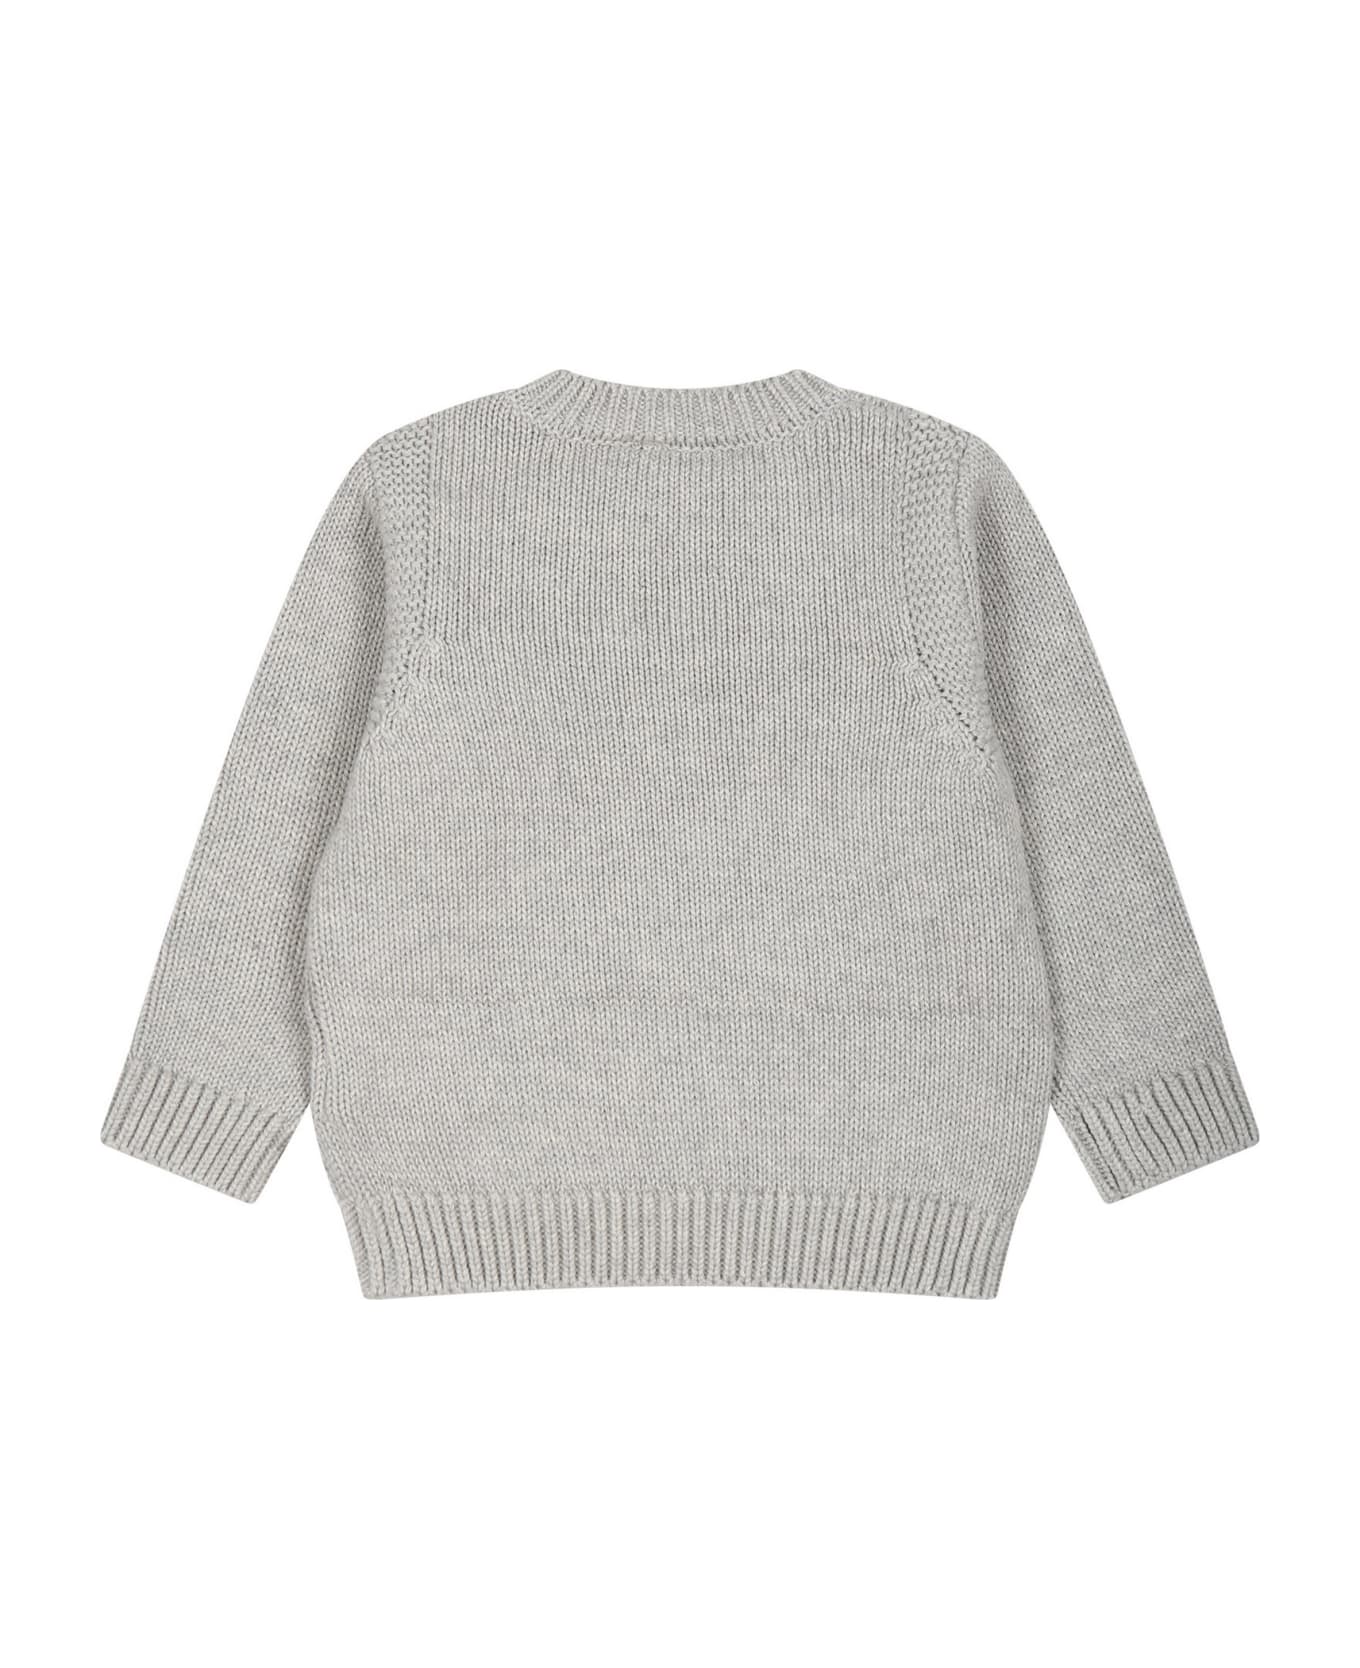 Stella McCartney Kids Grey Sweater For Baby Boy - Grey ニットウェア＆スウェットシャツ